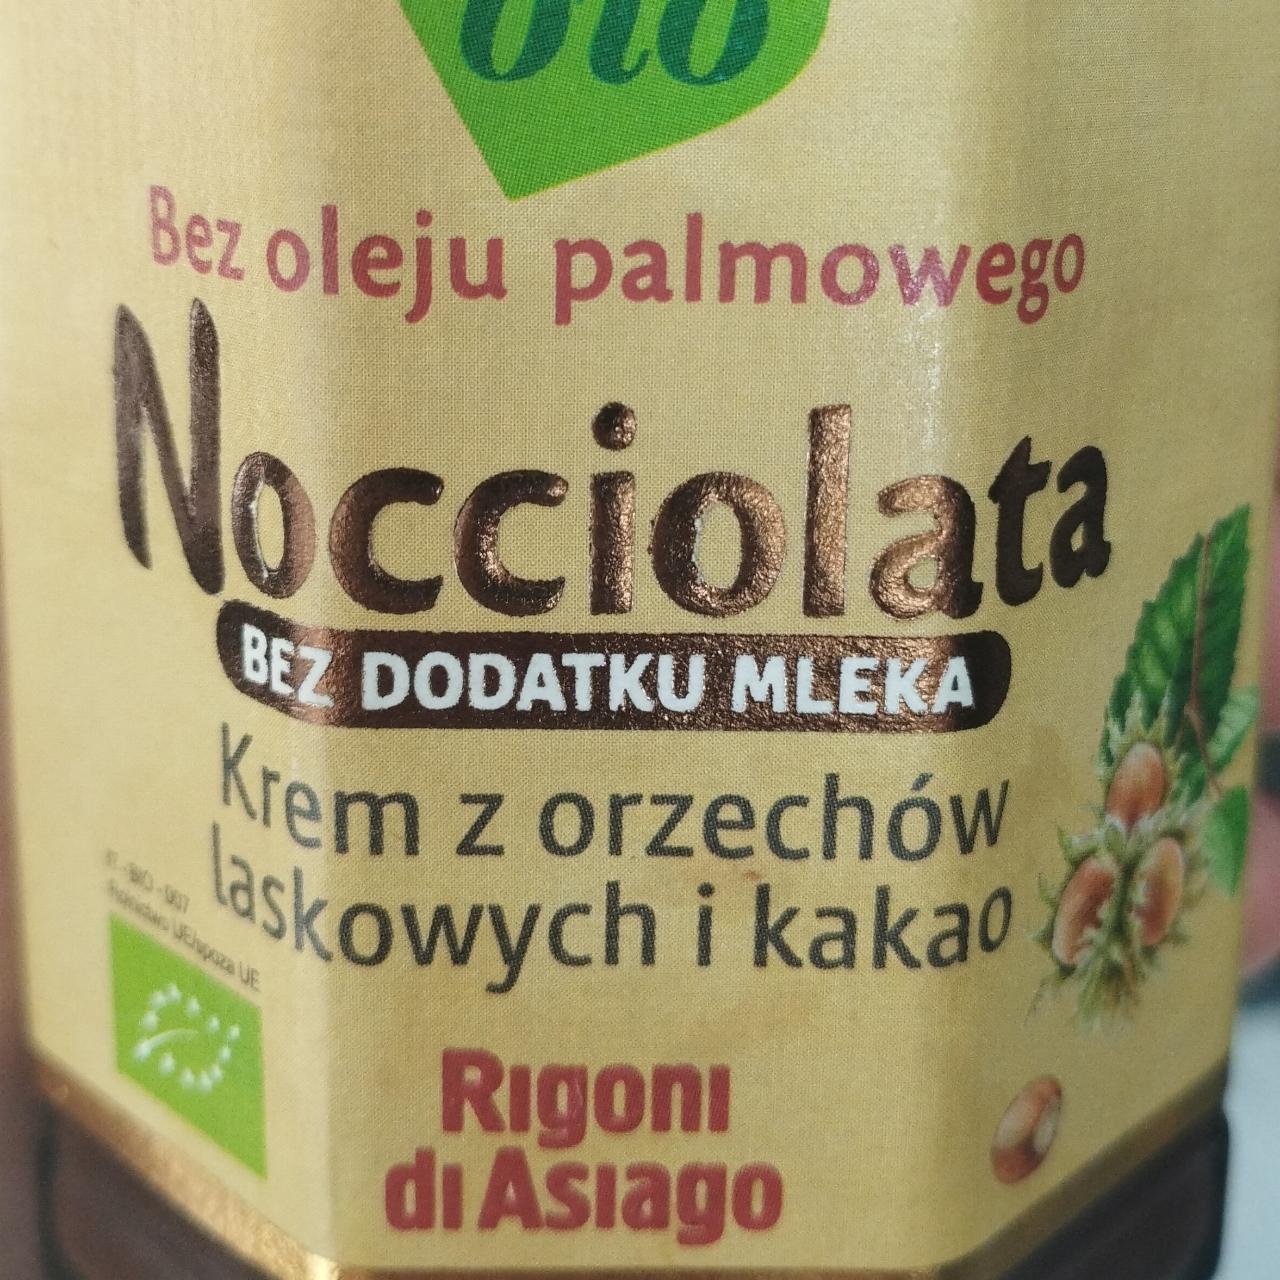 Zdjęcia - Nocciolata krem orzechowy z orzechów laskowych i kakao Rigoni diAsiago